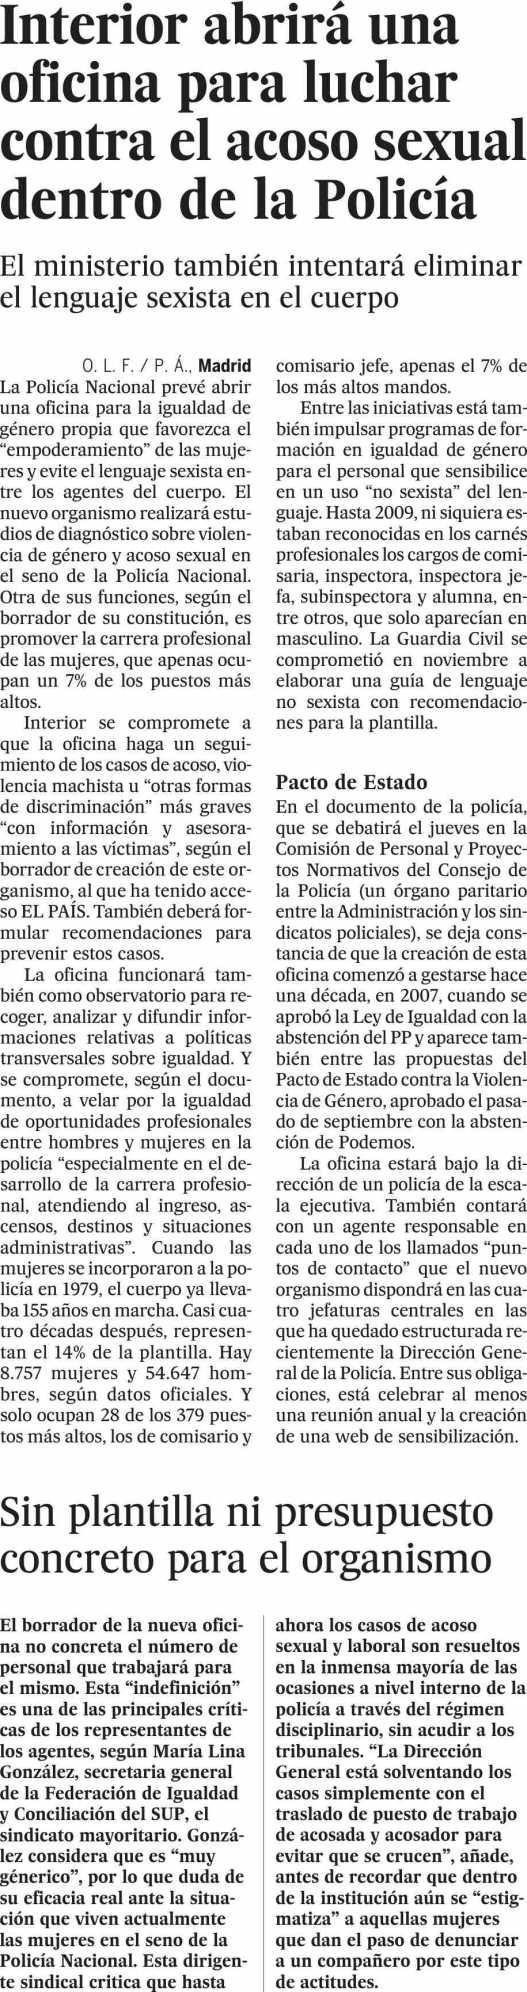 El País España 13/12/17 Prensa: Diaria Tirada: 231.140 Ejemplares Difusión: 180.765 Ejemplares Página: 26 : POLÍTICA NACIONAL Valor: 16.